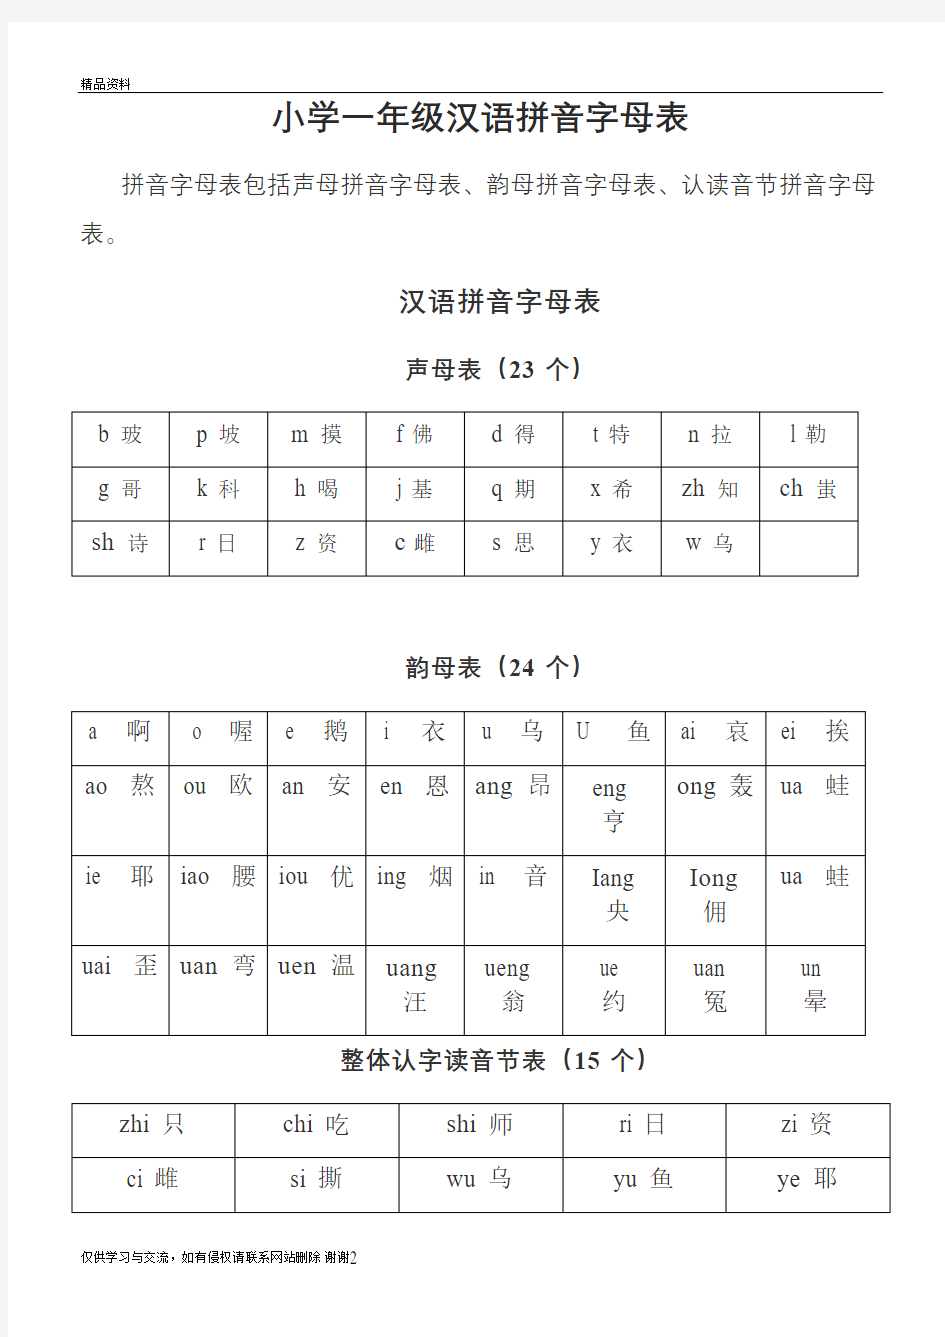 一年级汉语拼音字母表演示教学